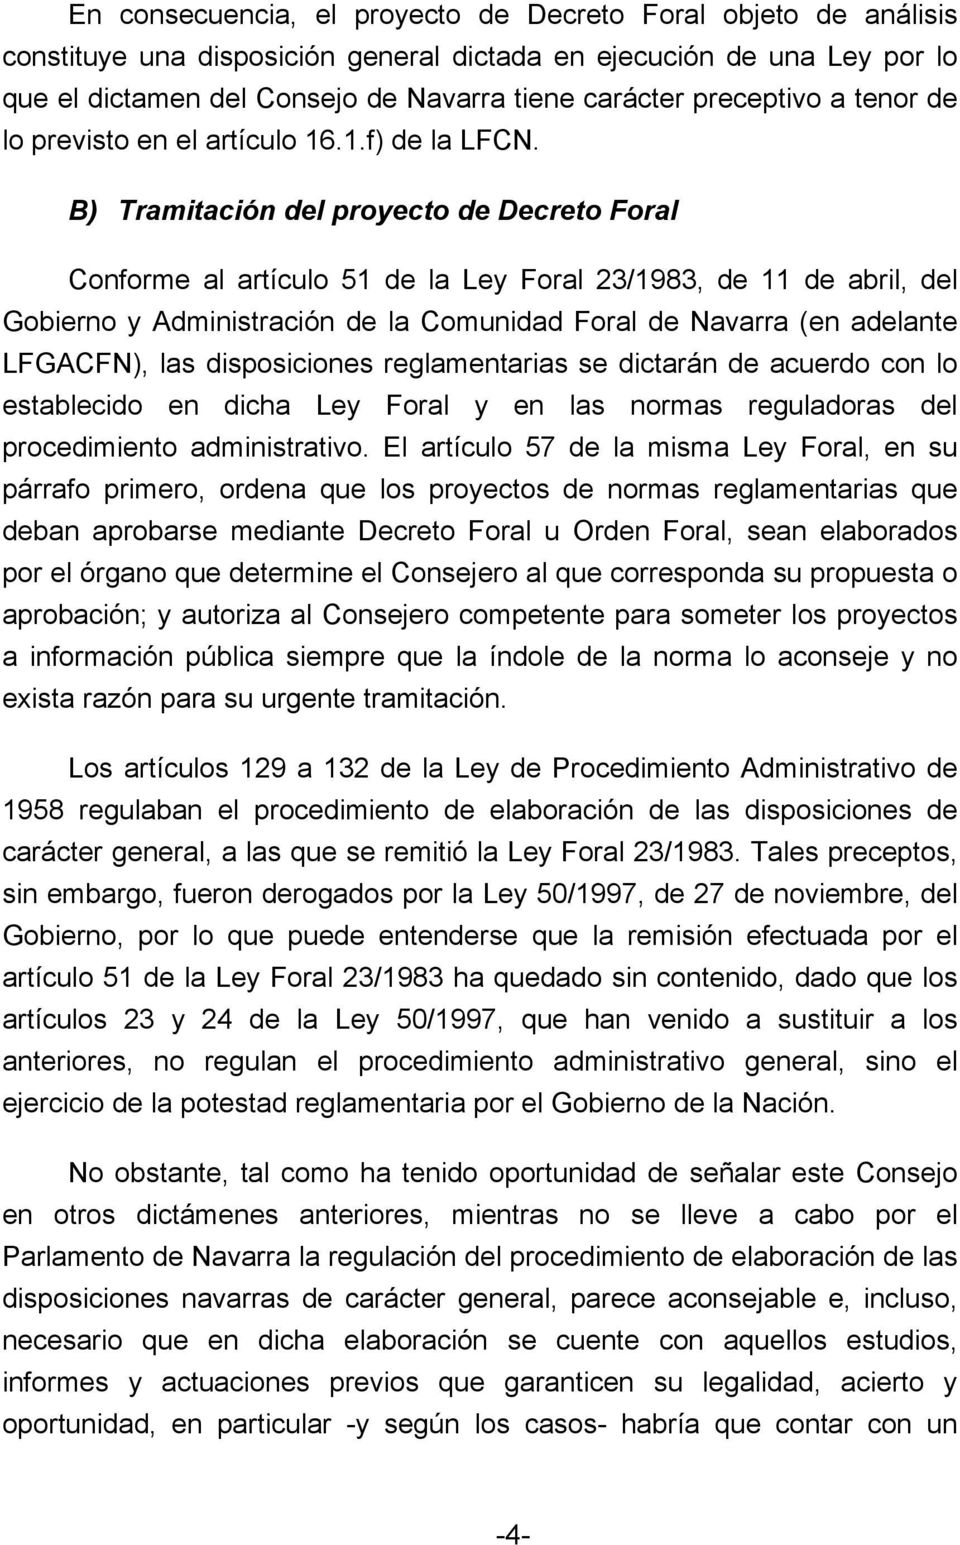 B) Tramitación del proyecto de Decreto Foral Conforme al artículo 51 de la Ley Foral 23/1983, de 11 de abril, del Gobierno y Administración de la Comunidad Foral de Navarra (en adelante LFGACFN), las